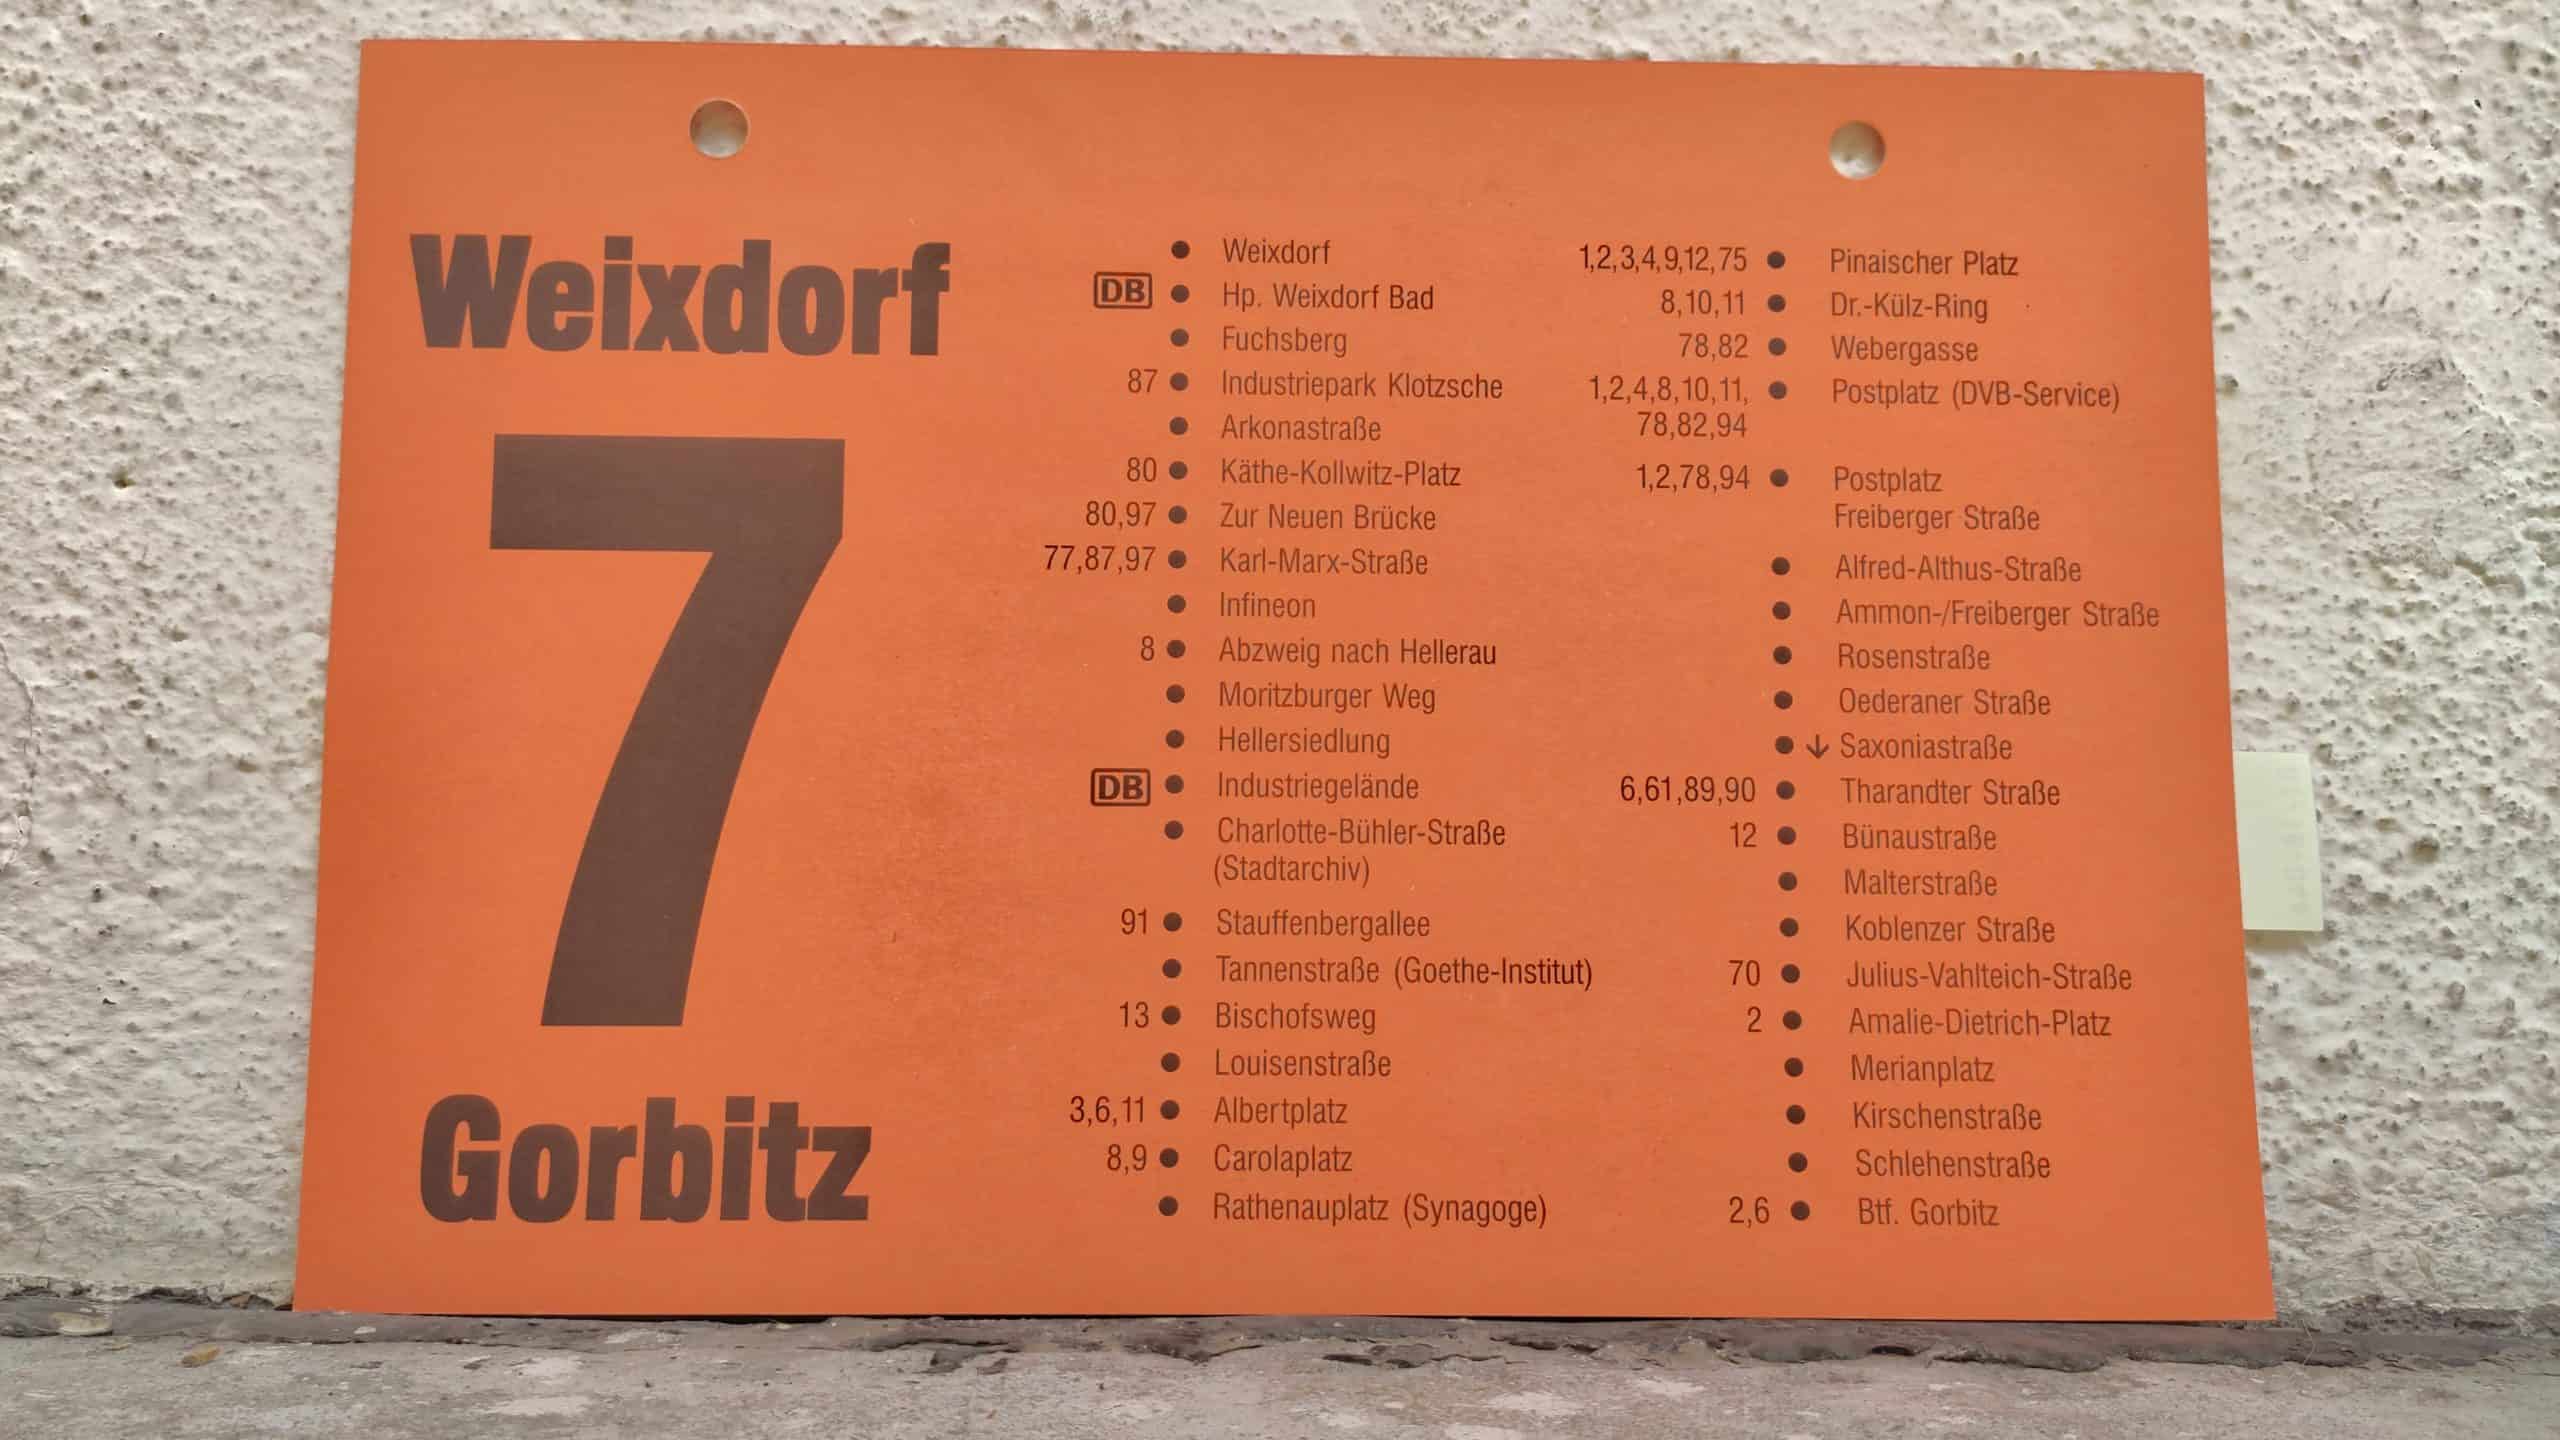 7 Weixdorf – Gorbitz #2